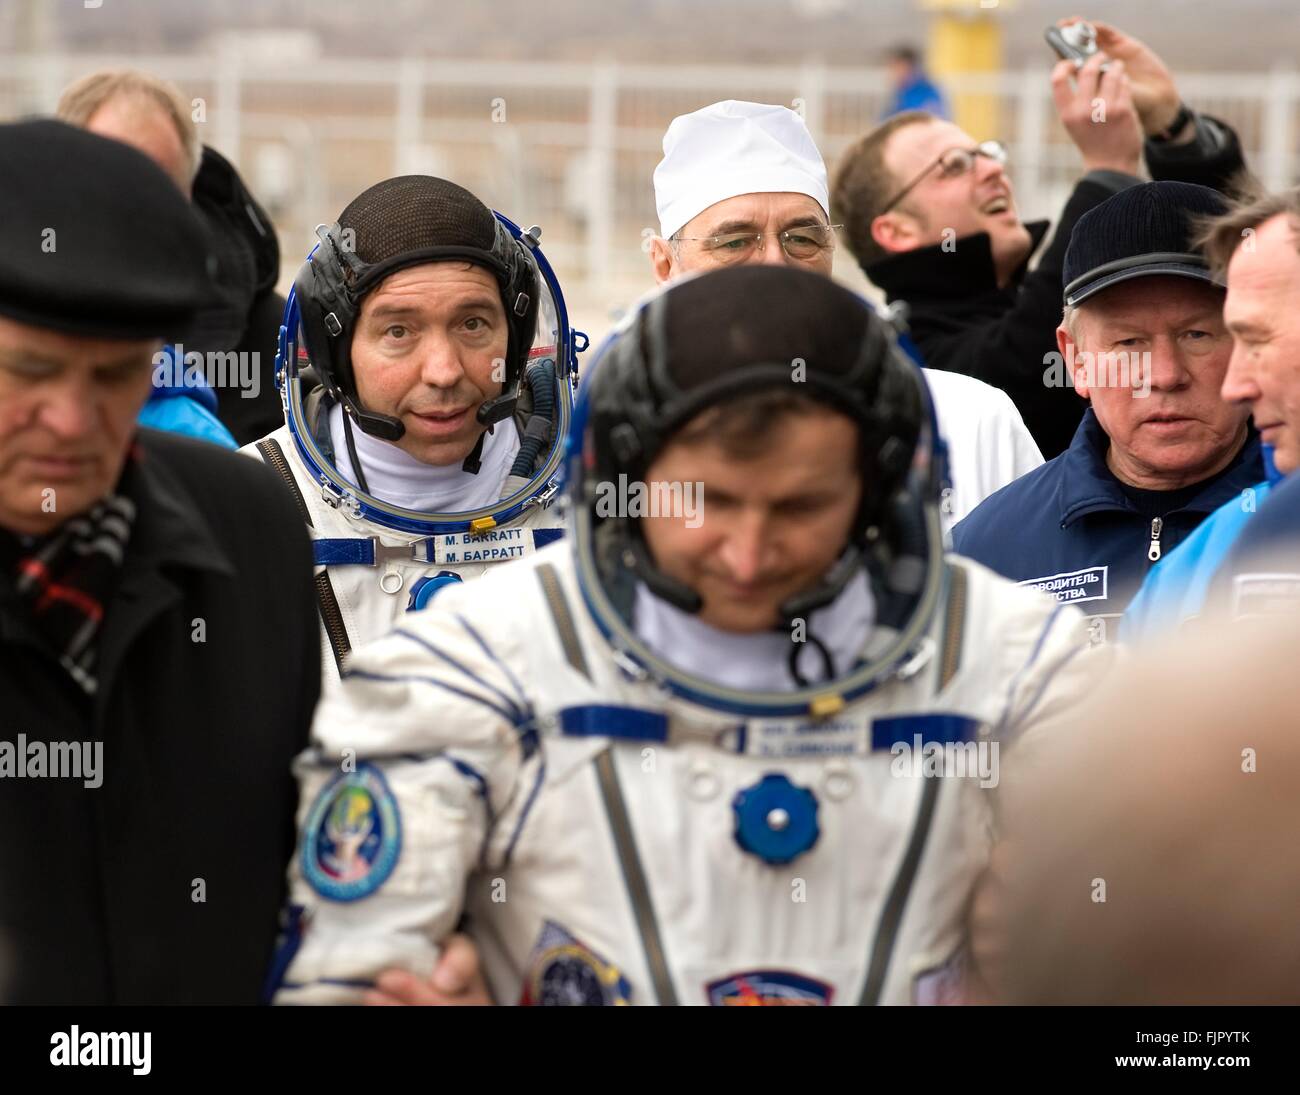 Station spatiale internationale membre de l'équipage Expedition 19 L'astronaute américain Michael Barratt quitte à bord du vaisseau Soyouz TMA-10 en avant de lancer le 26 mars 2009 à Baïkonour, au Kazakhstan. Les membres de l'équipage rejoint Barratt cosmonaute russe Gennady Padalka et l'espace Charles Simonyi. Banque D'Images